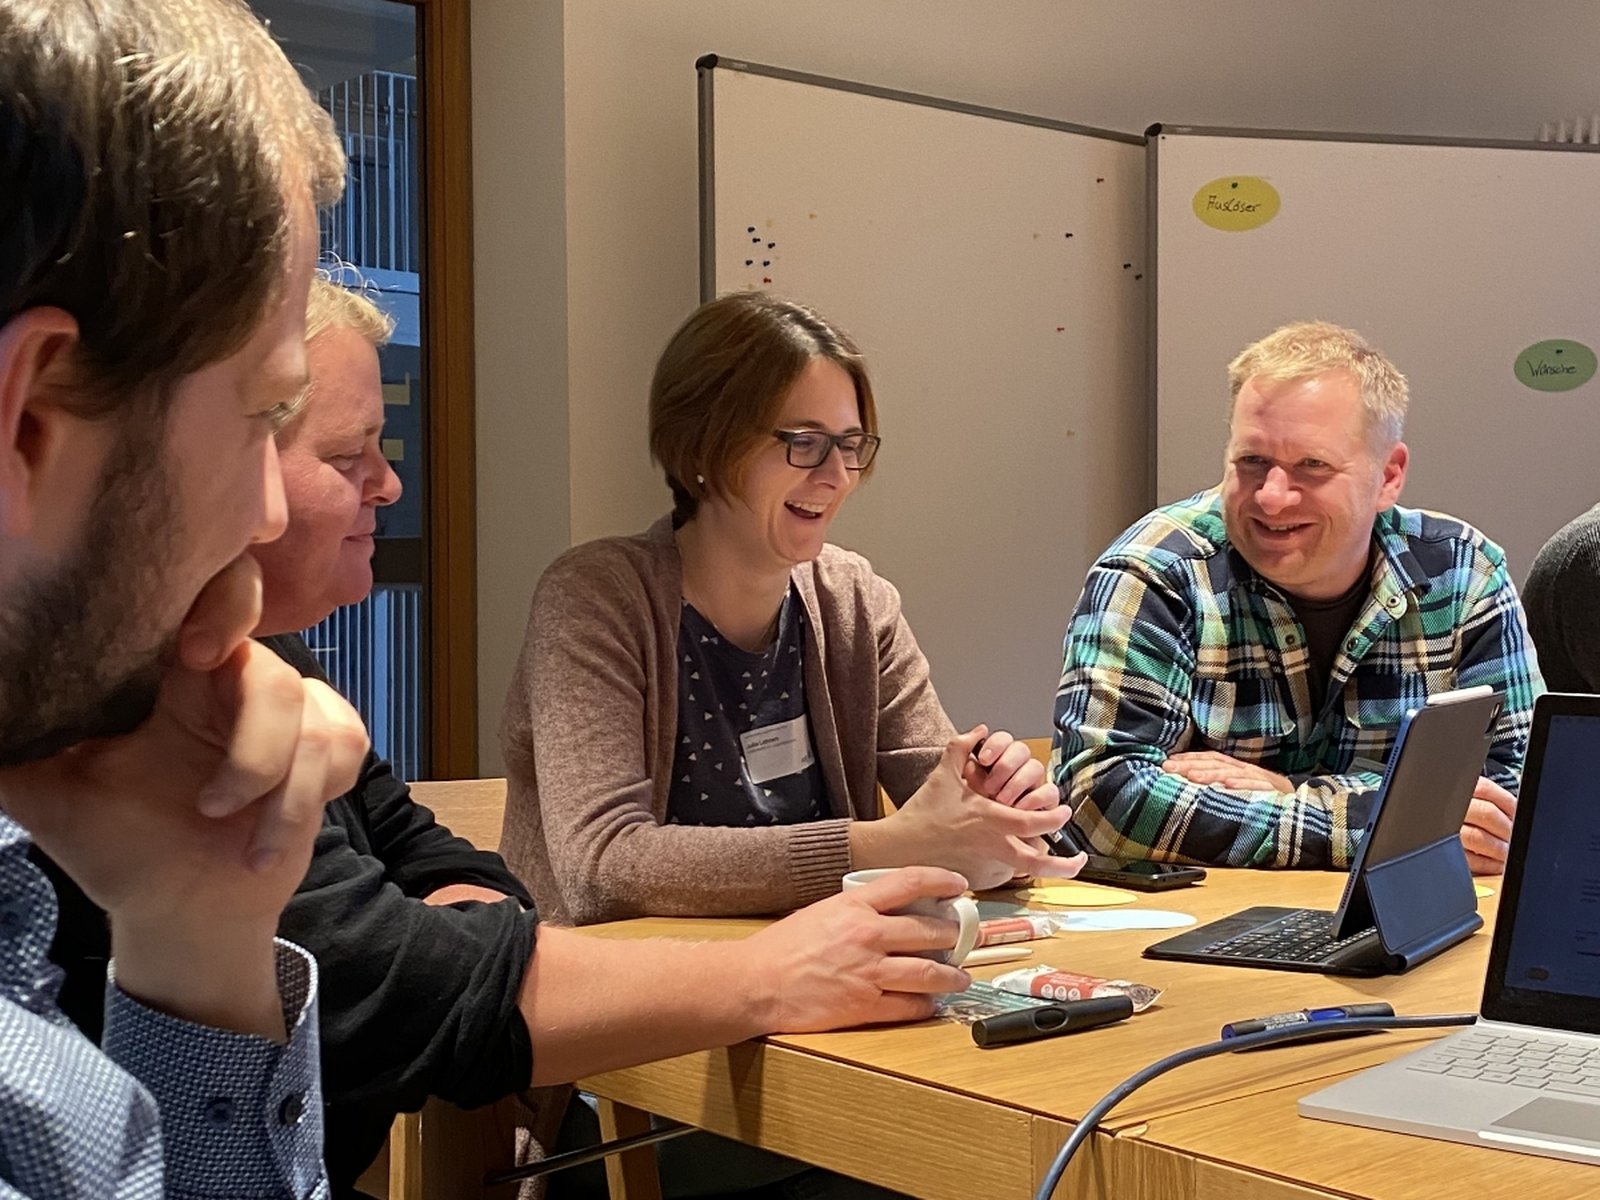 Vier Workshop-Teilnehmer sitzen am Tisch und lachen